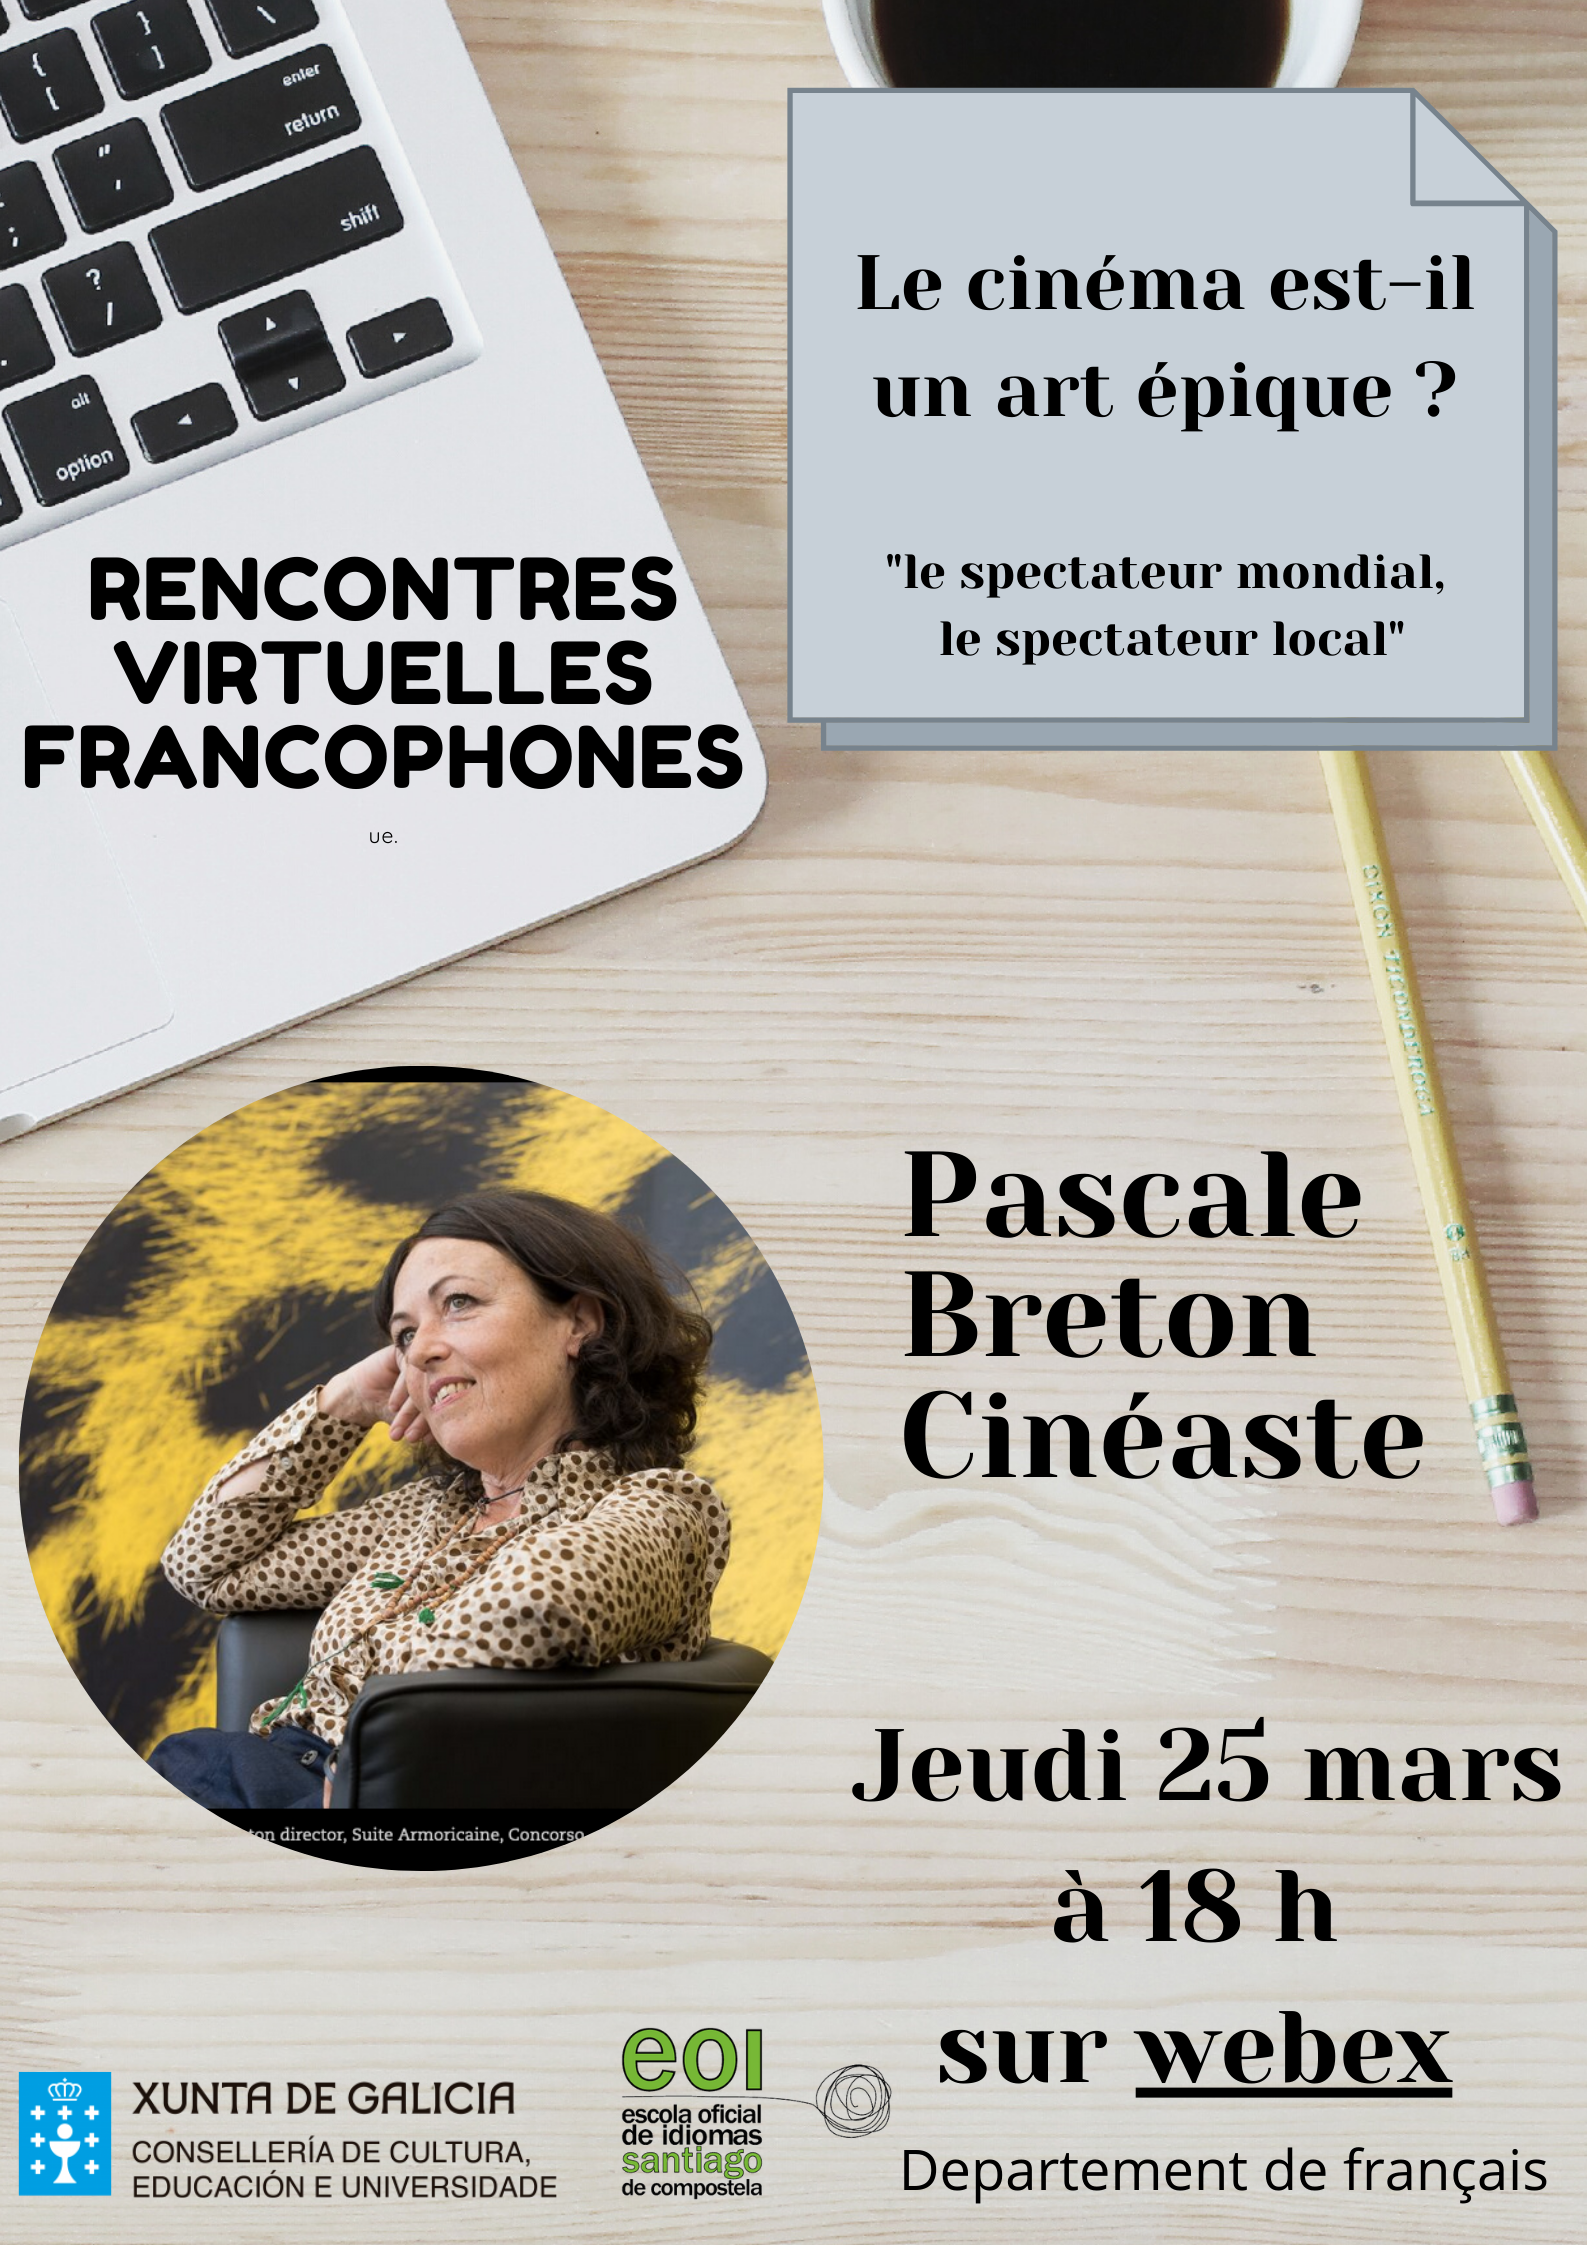 Pascale Breton